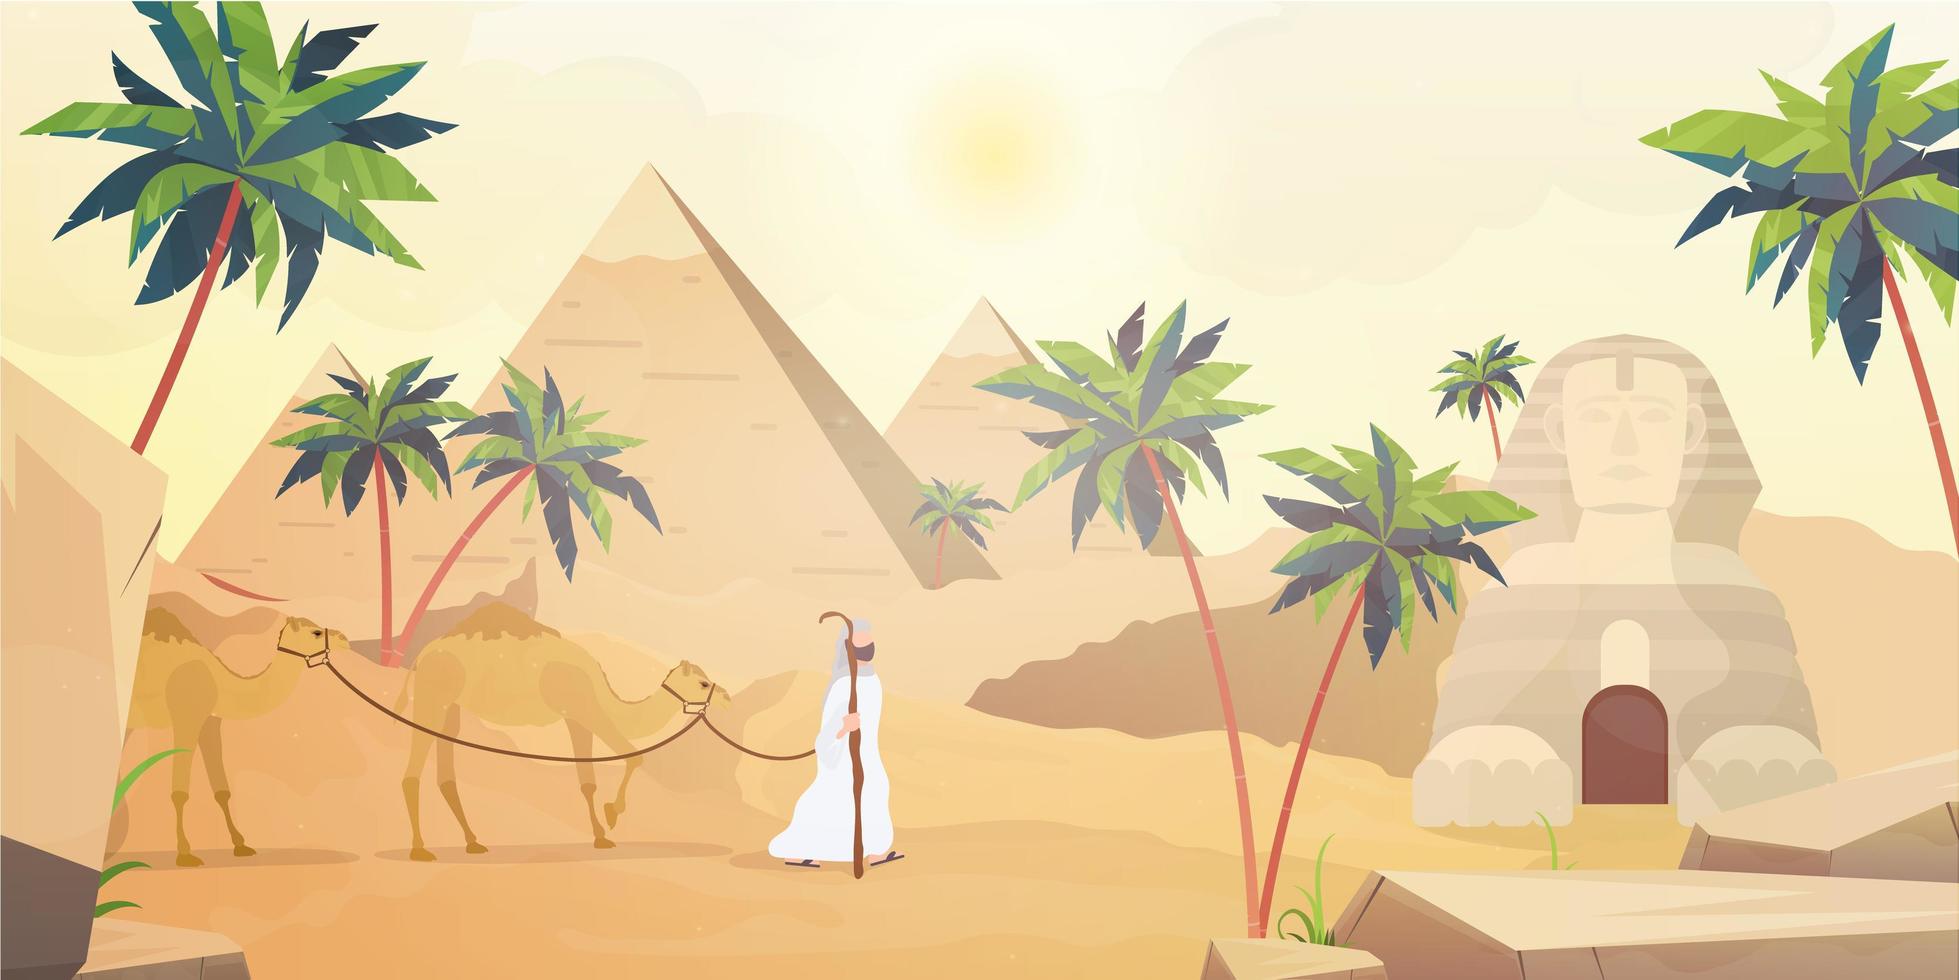 piramidi egizie e la sfinge. deserto del sahara in stile cartone animato. vettore